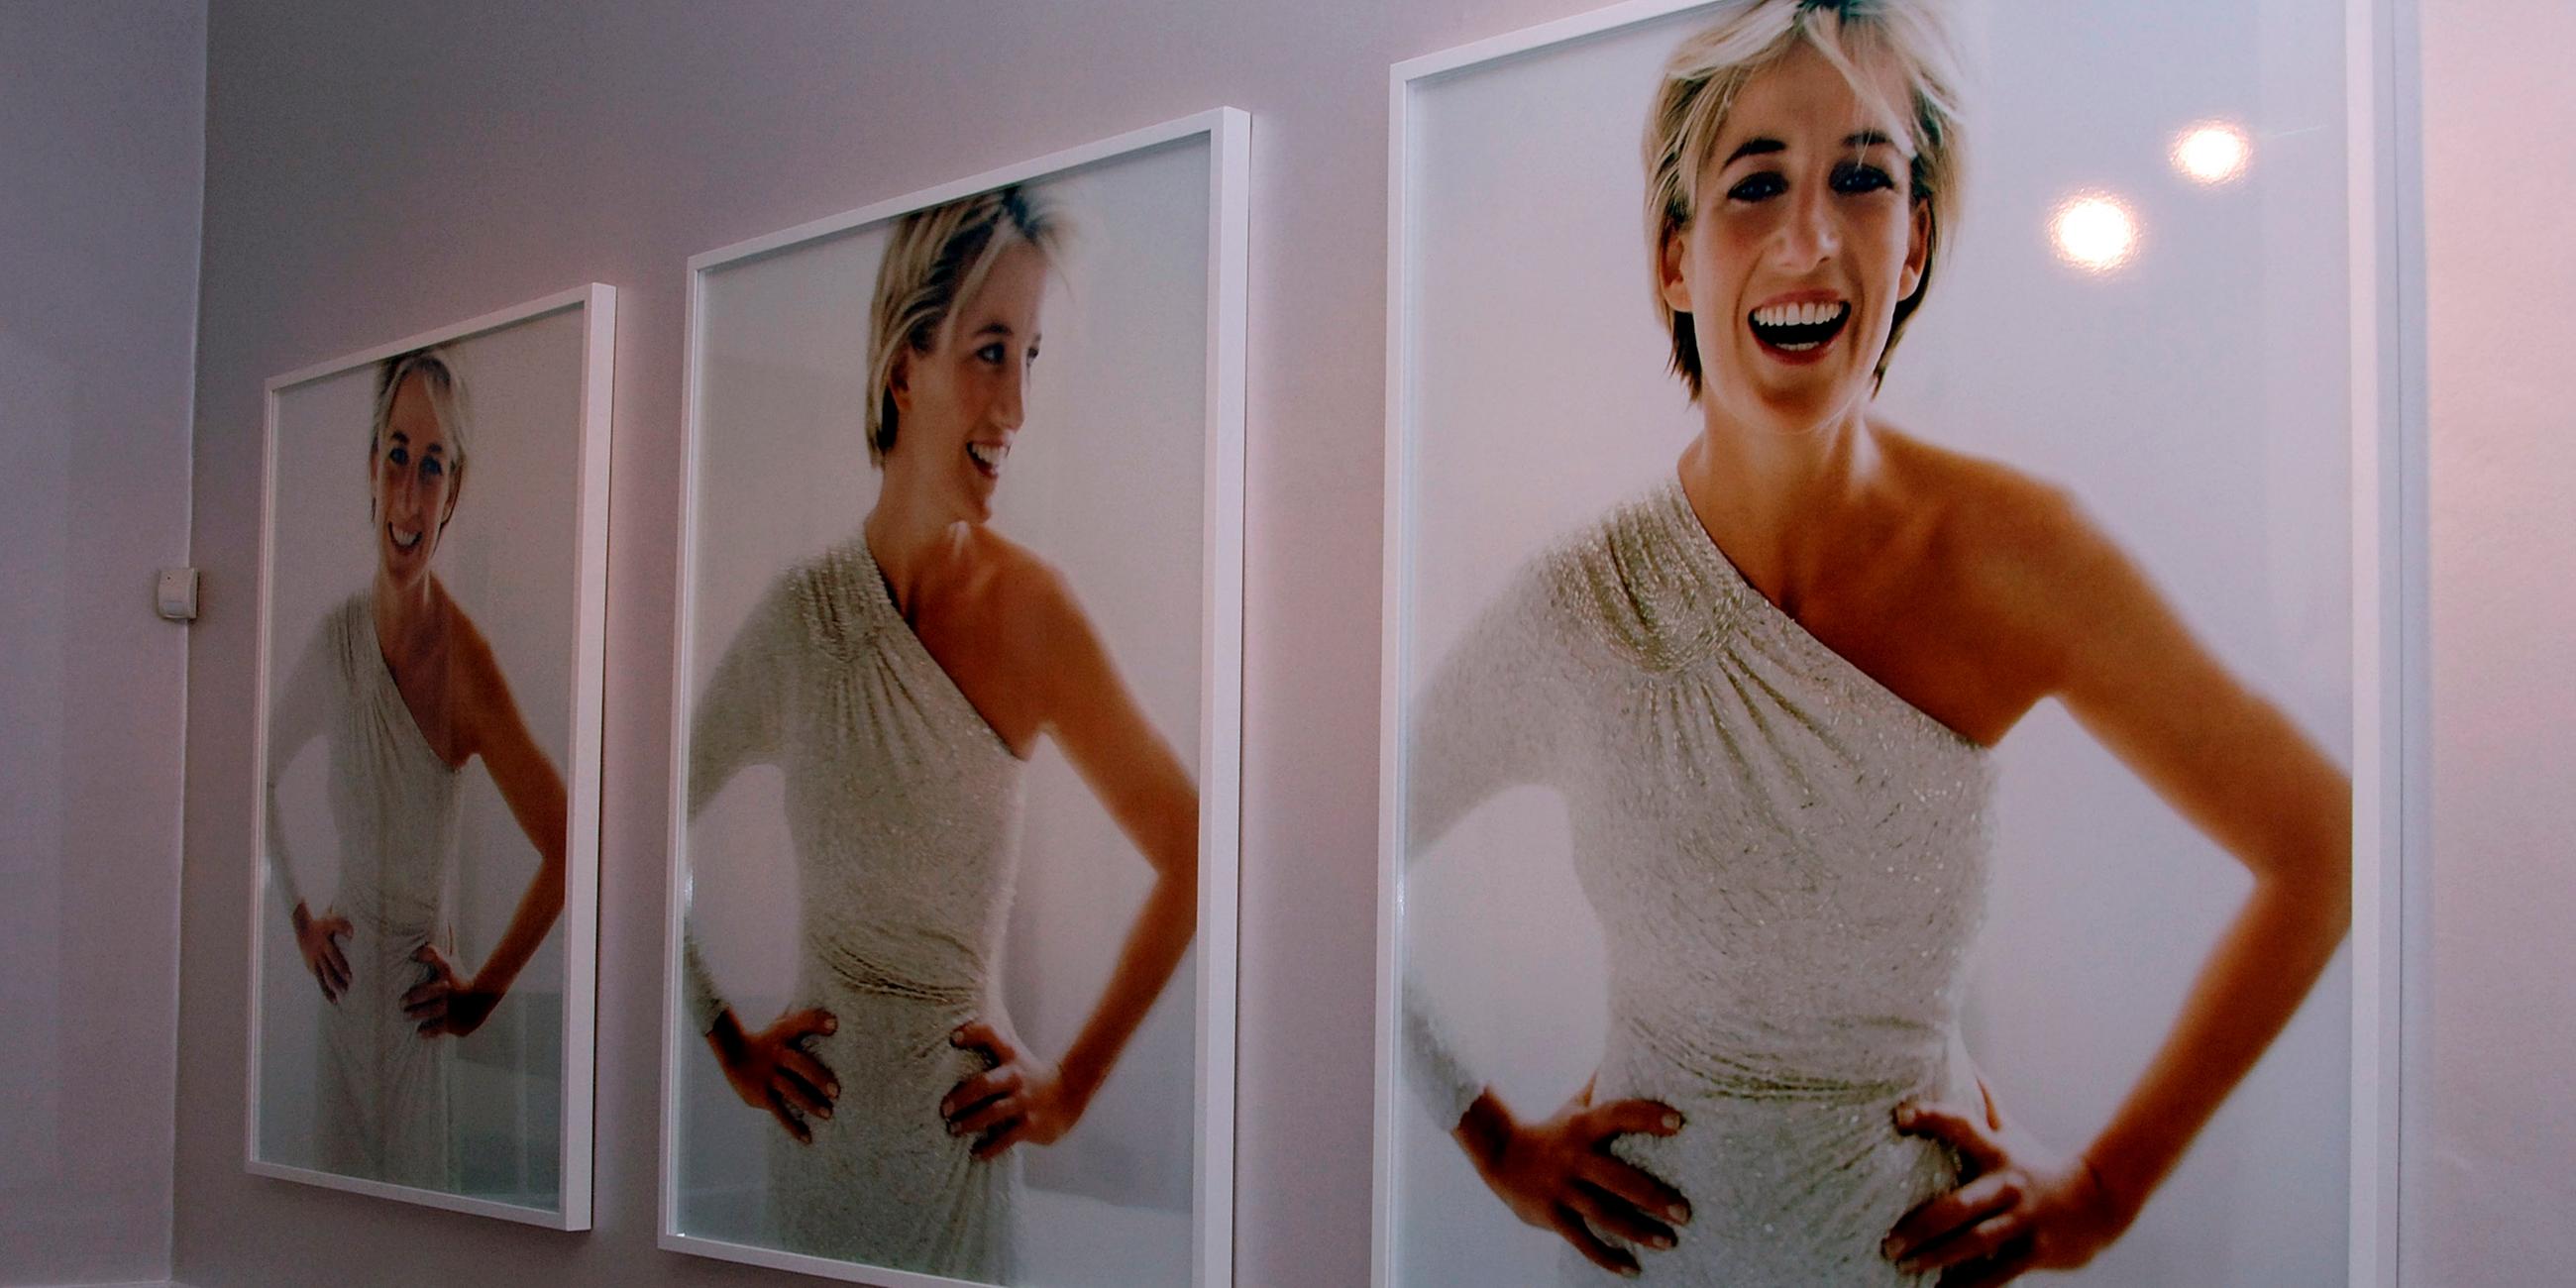 Fotografien von Diana in einer Galerie